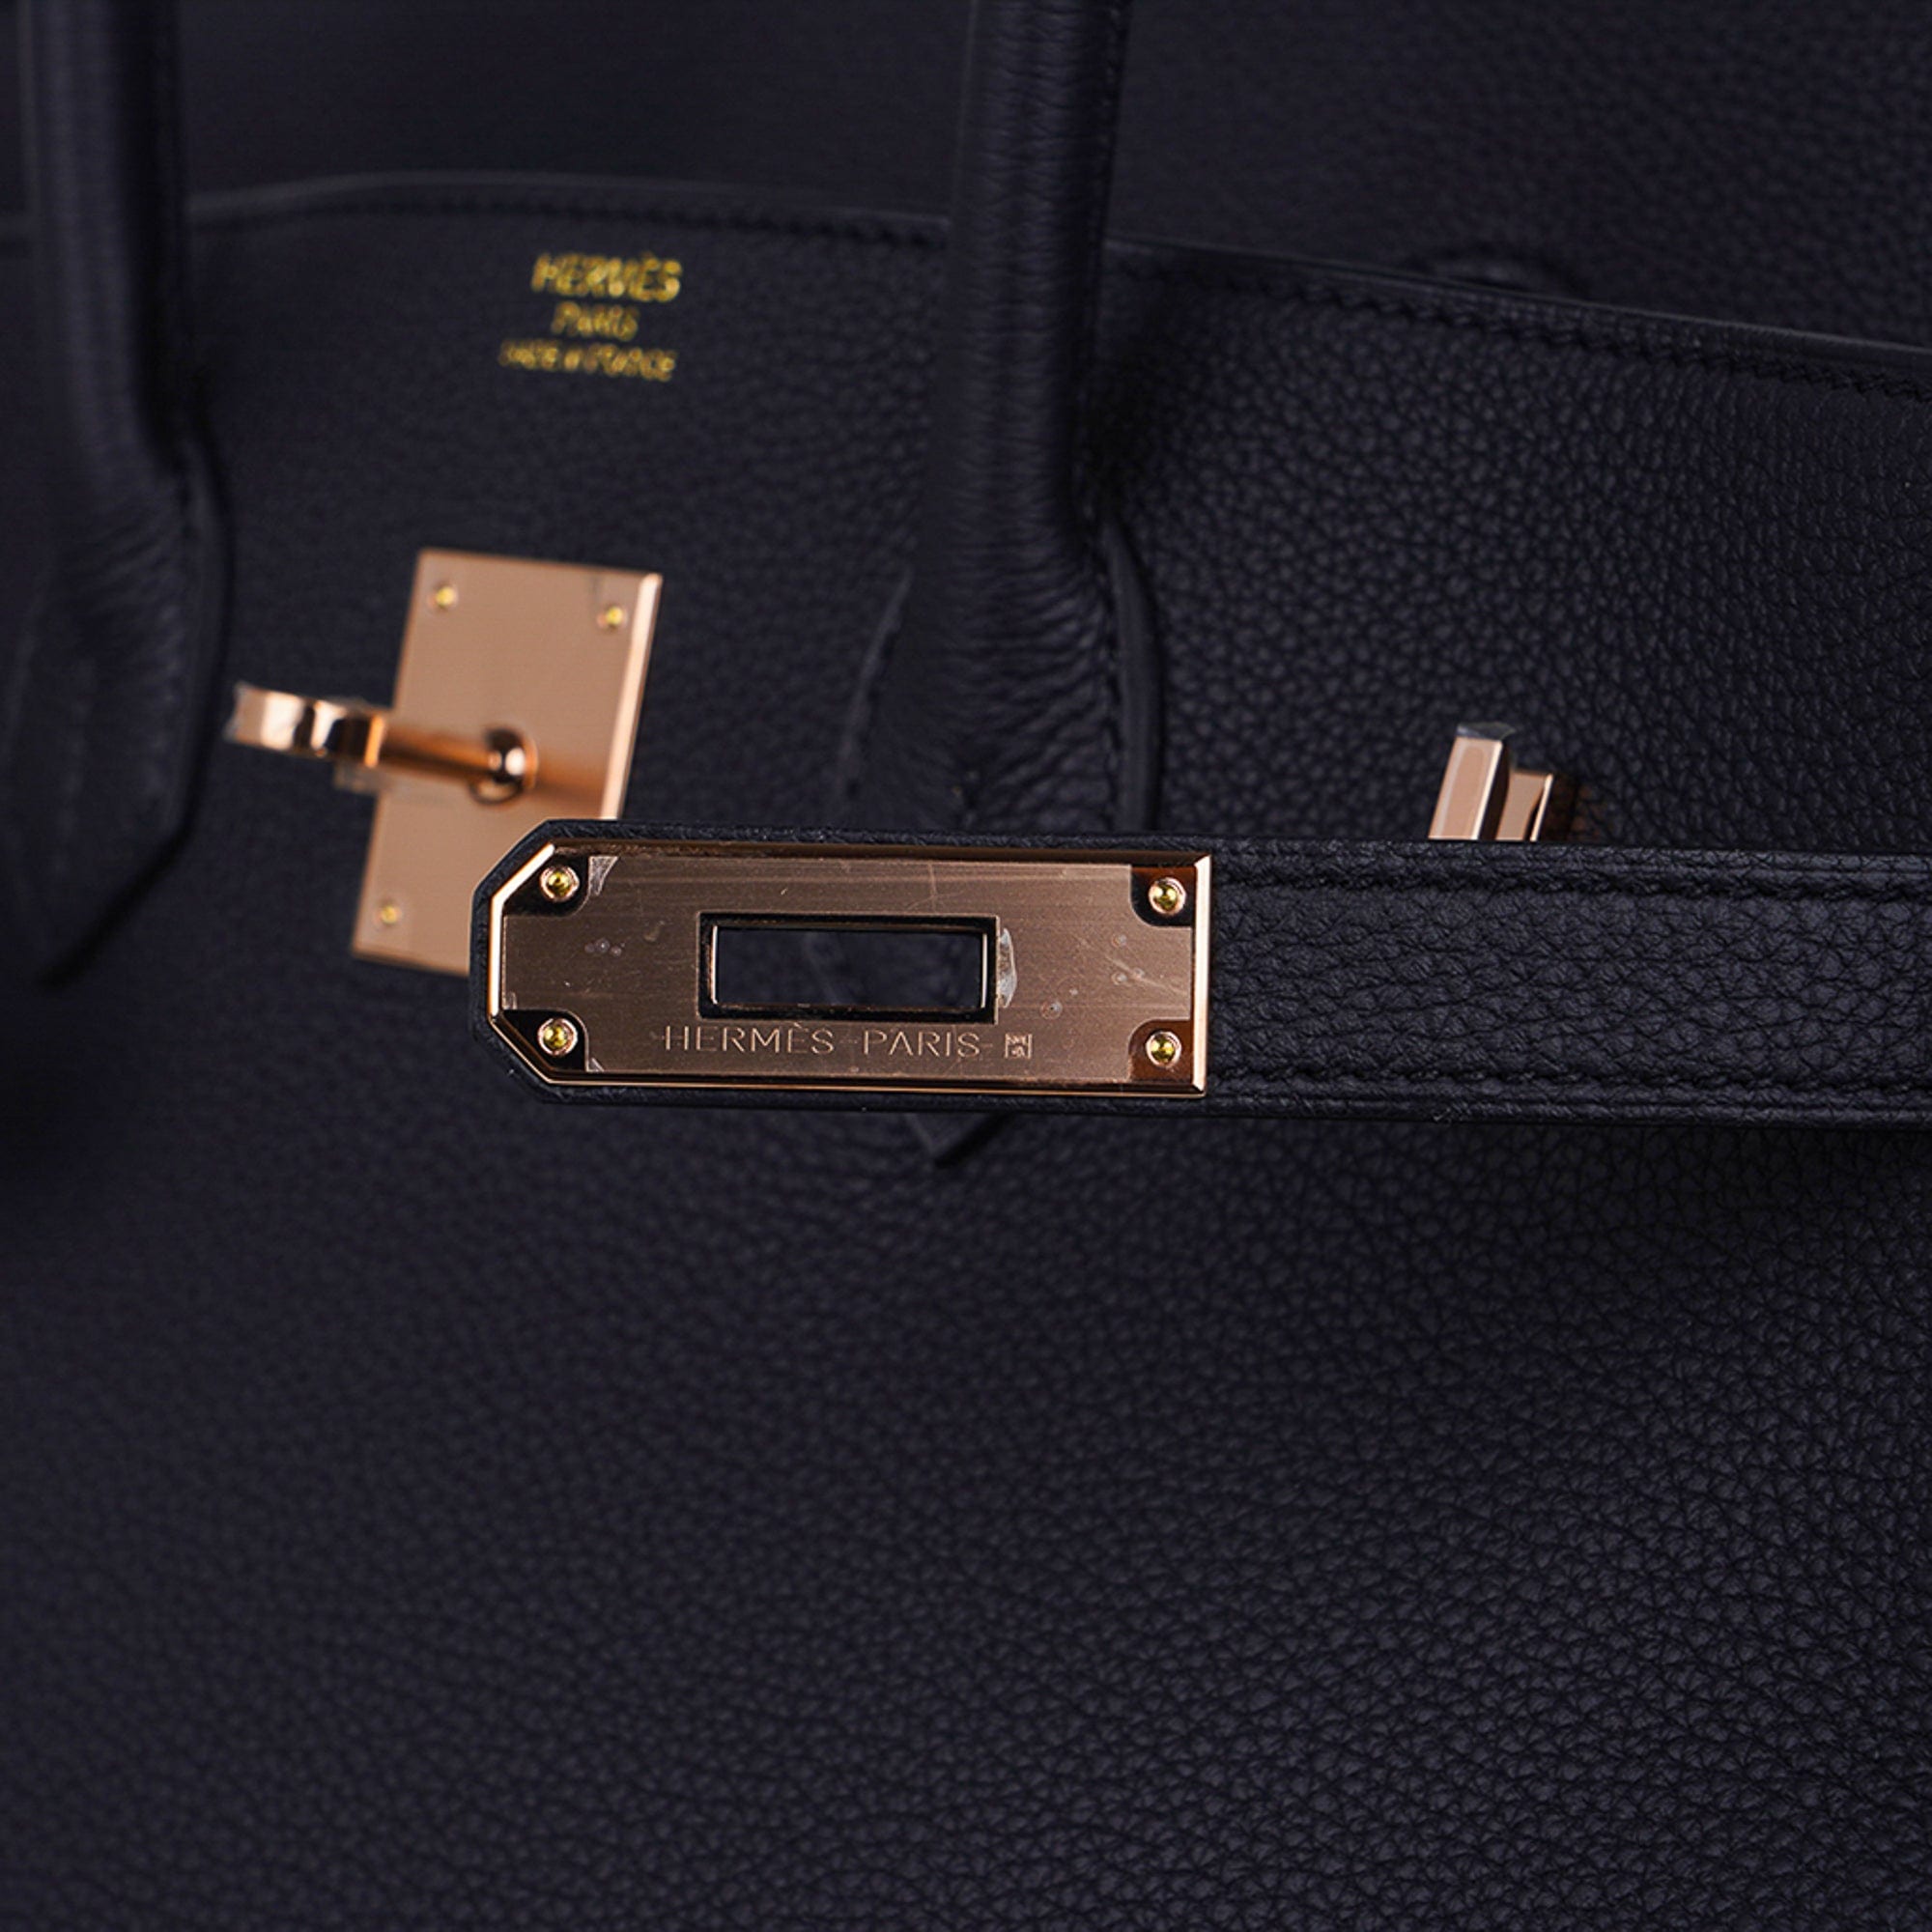 Hermes Birkin bag 35 Black Togo leather Rose gold hardware